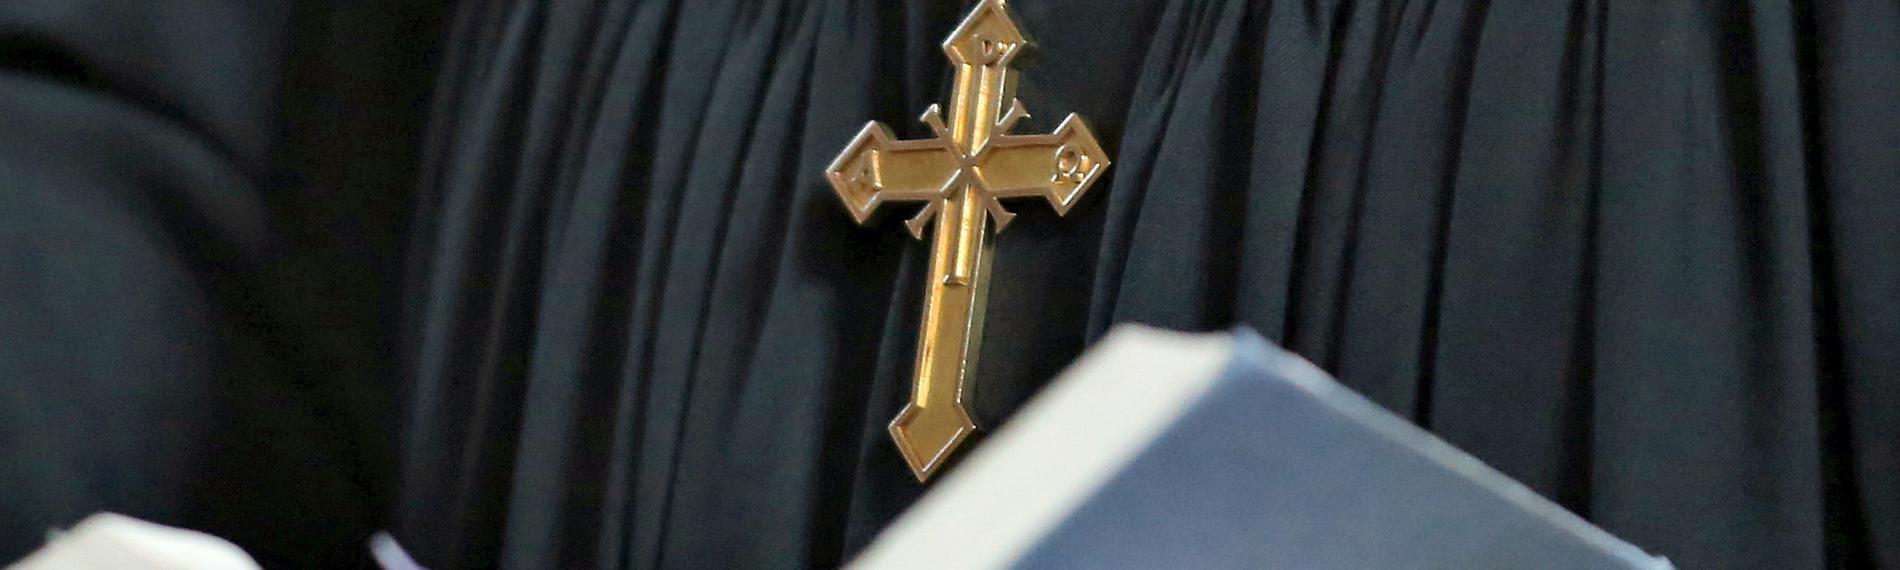 Ein Pfarrer mit Kreuzkette und schwarzem Gewand hält eine aufgeschlagene Bibel in seinen Händen.